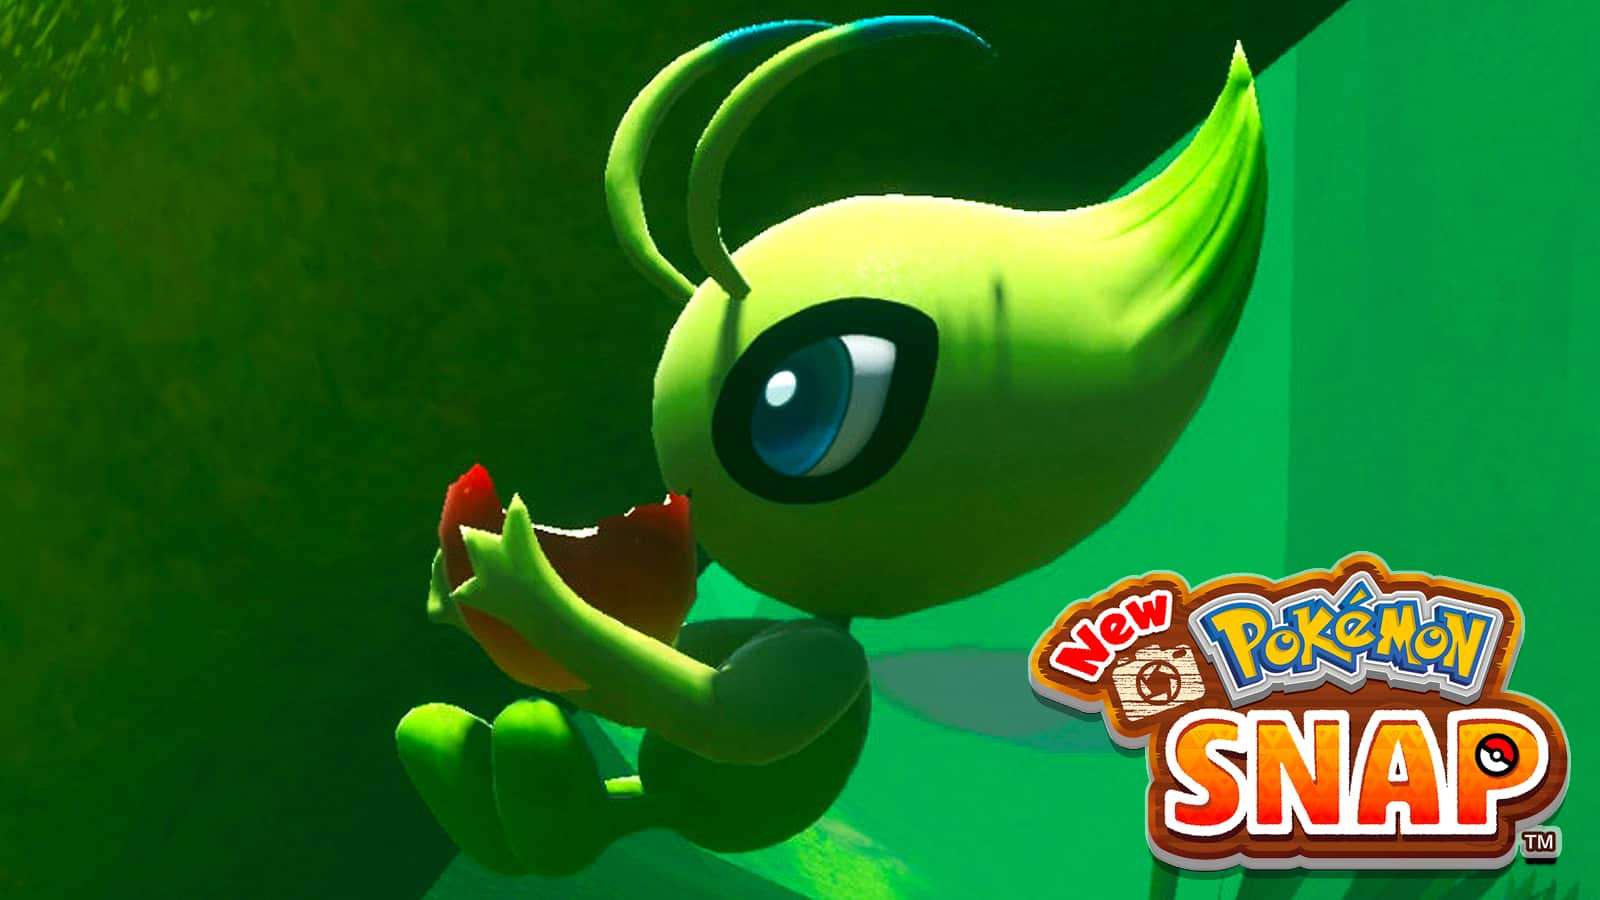 Celebi eating apple in New Pokemon Snap